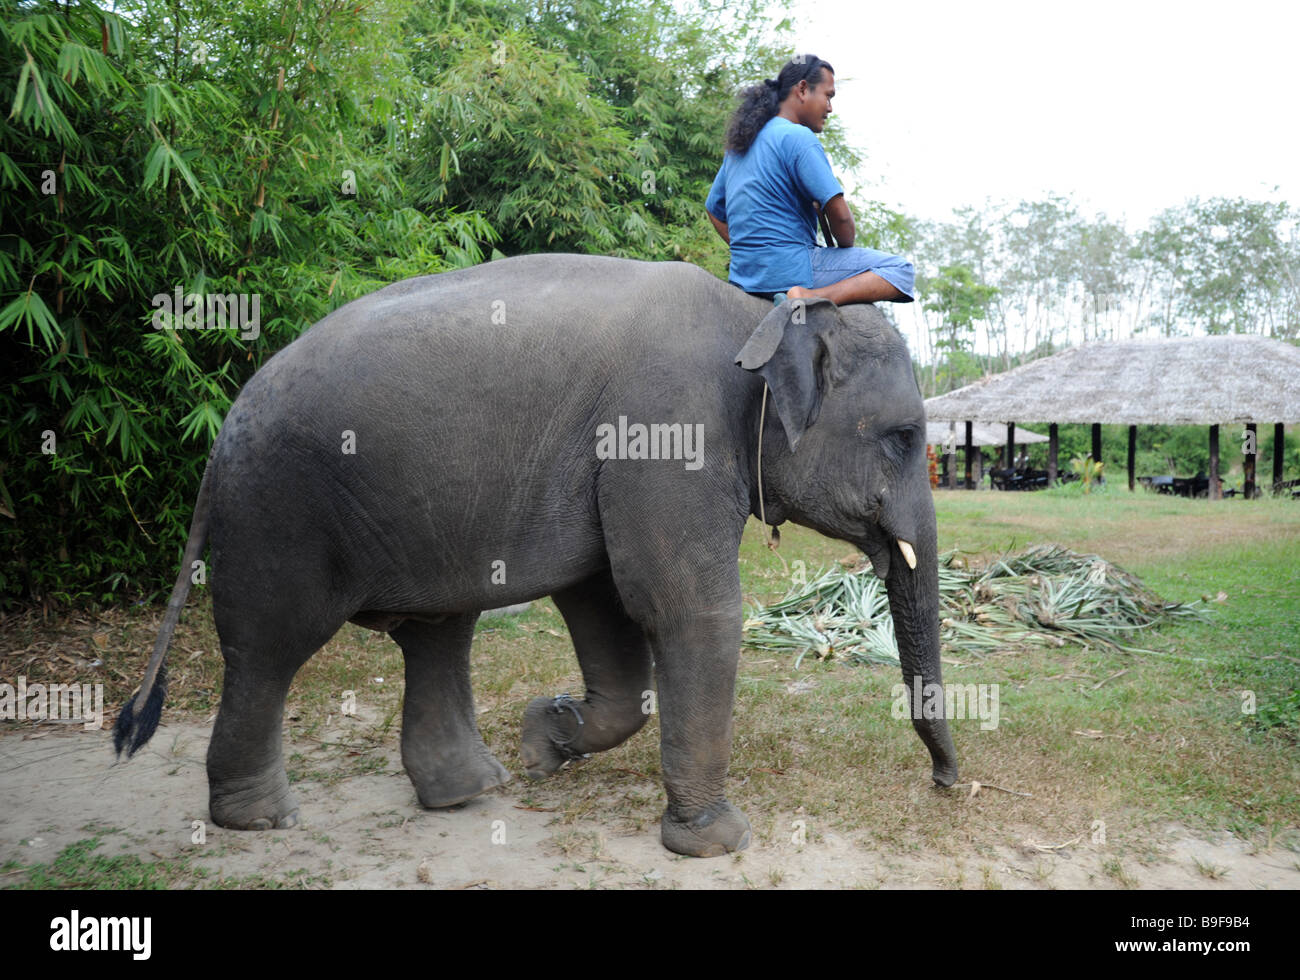 Gestionnaire d'éléphants dans un petit parc à thème à Phuket Thaïlande Banque D'Images